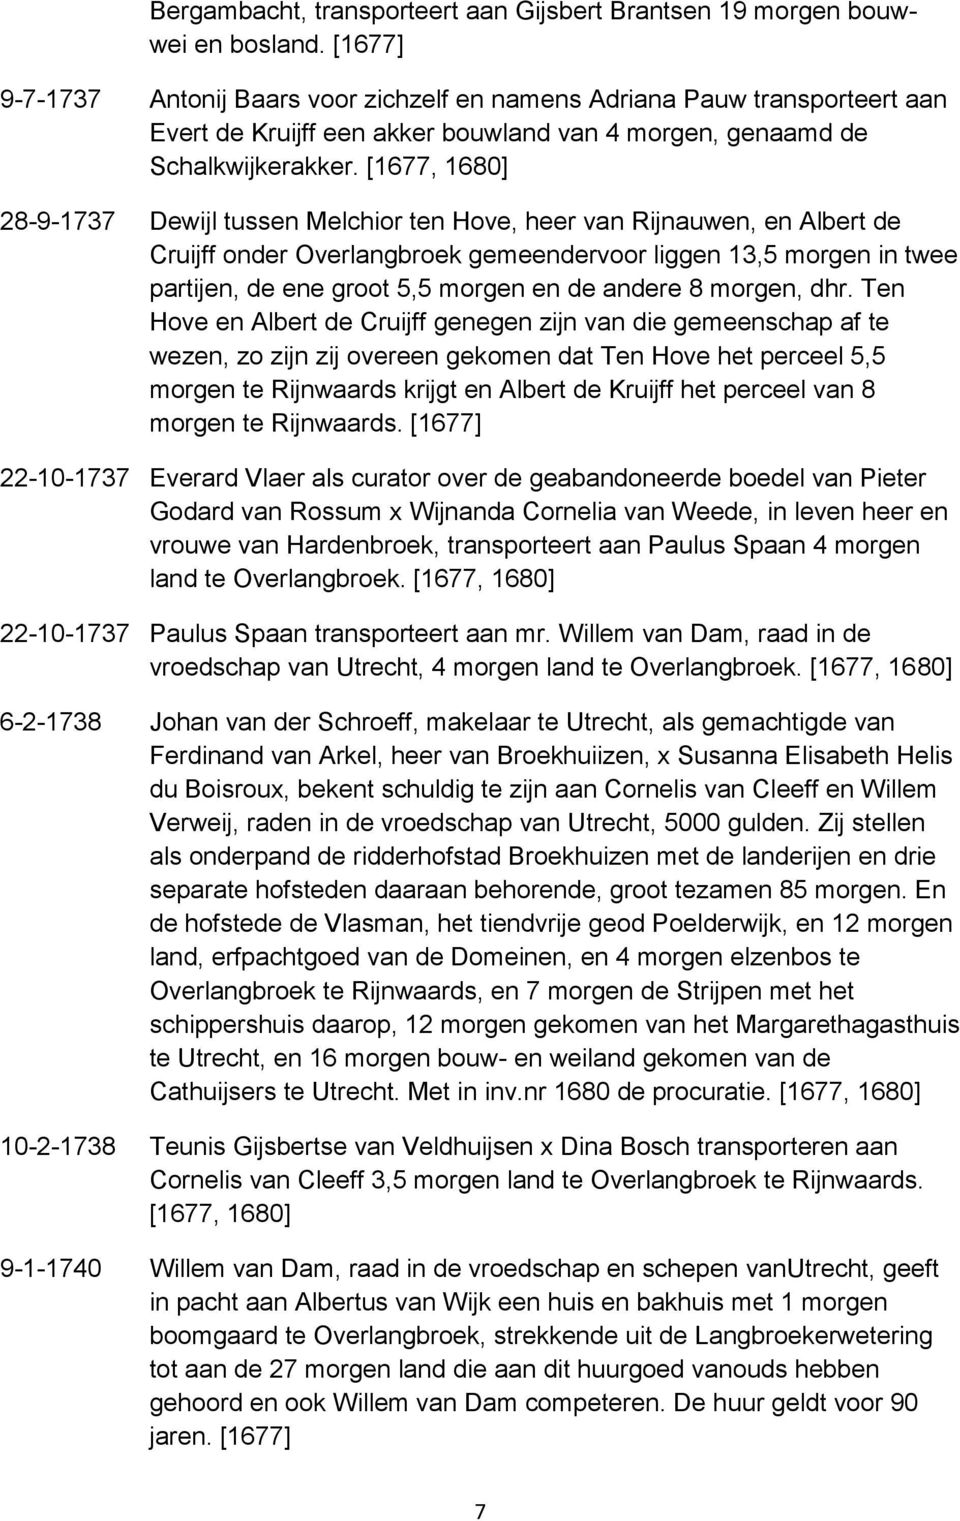 [1677, 1680] 28-9-1737 Dewijl tussen Melchior ten Hove, heer van Rijnauwen, en Albert de Cruijff onder Overlangbroek gemeendervoor liggen 13,5 morgen in twee partijen, de ene groot 5,5 morgen en de